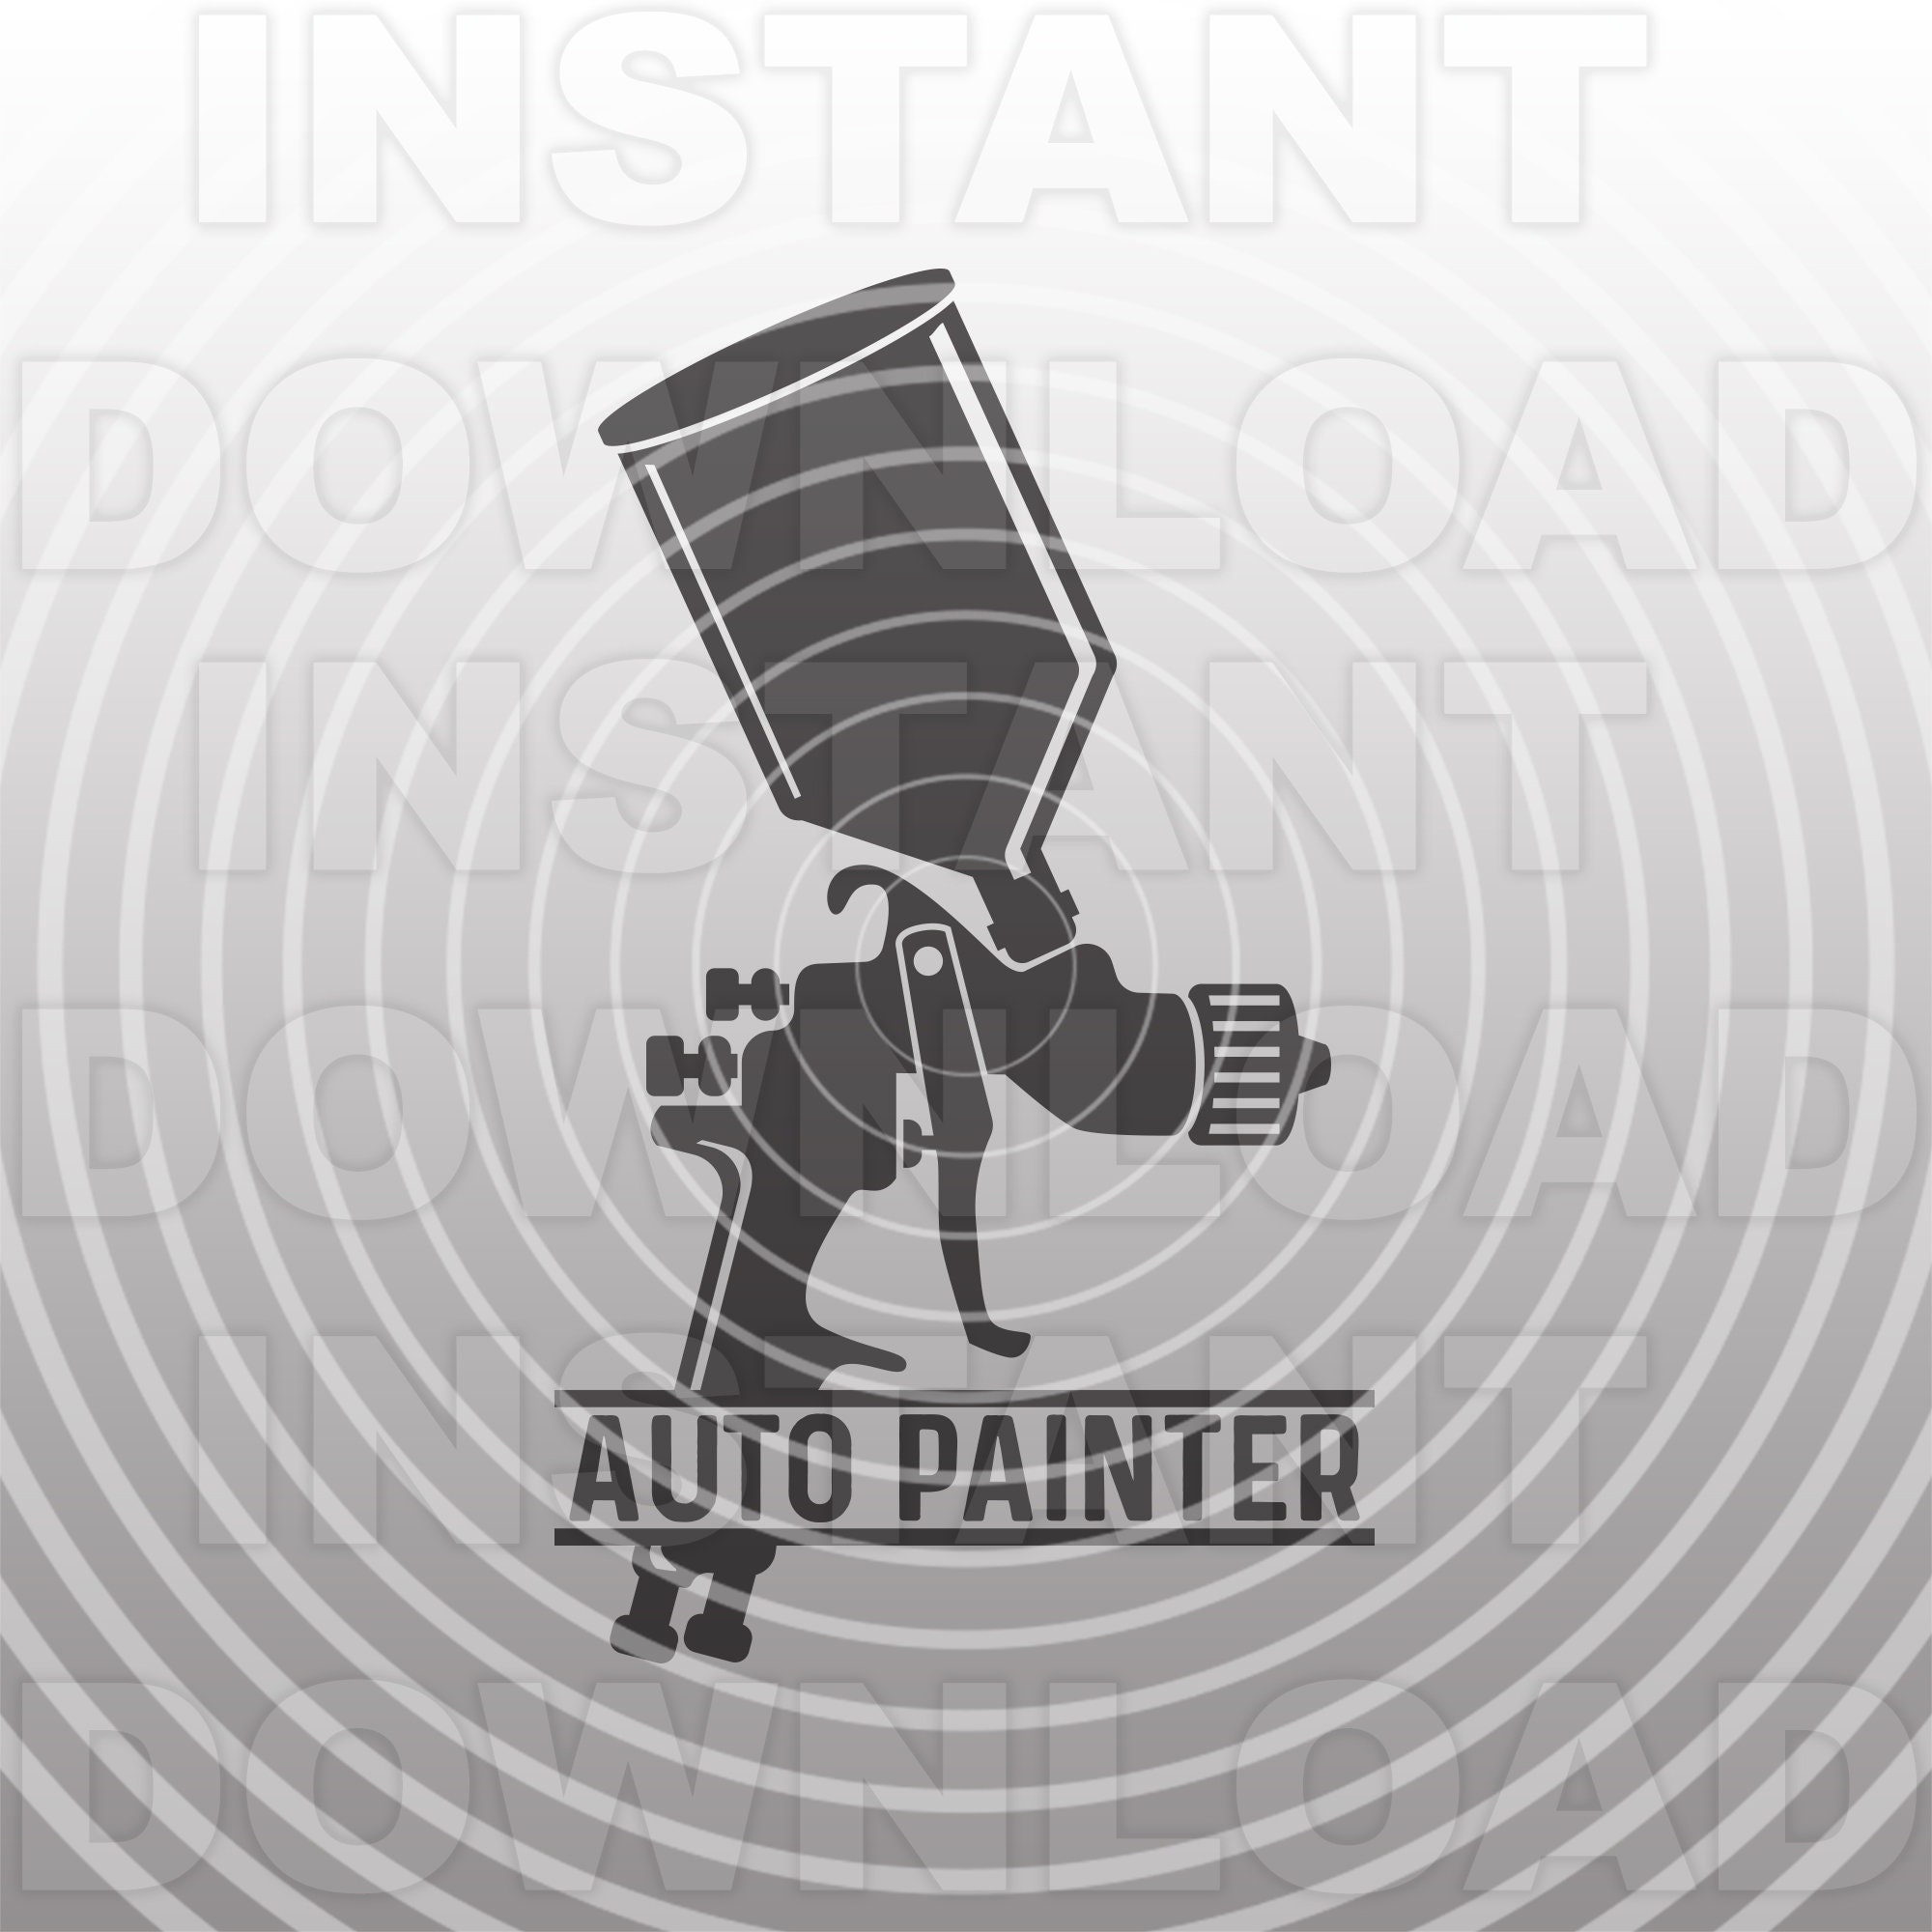 Car Automotive Painter Paint Spray Gun Vintage Patent Print | Poster